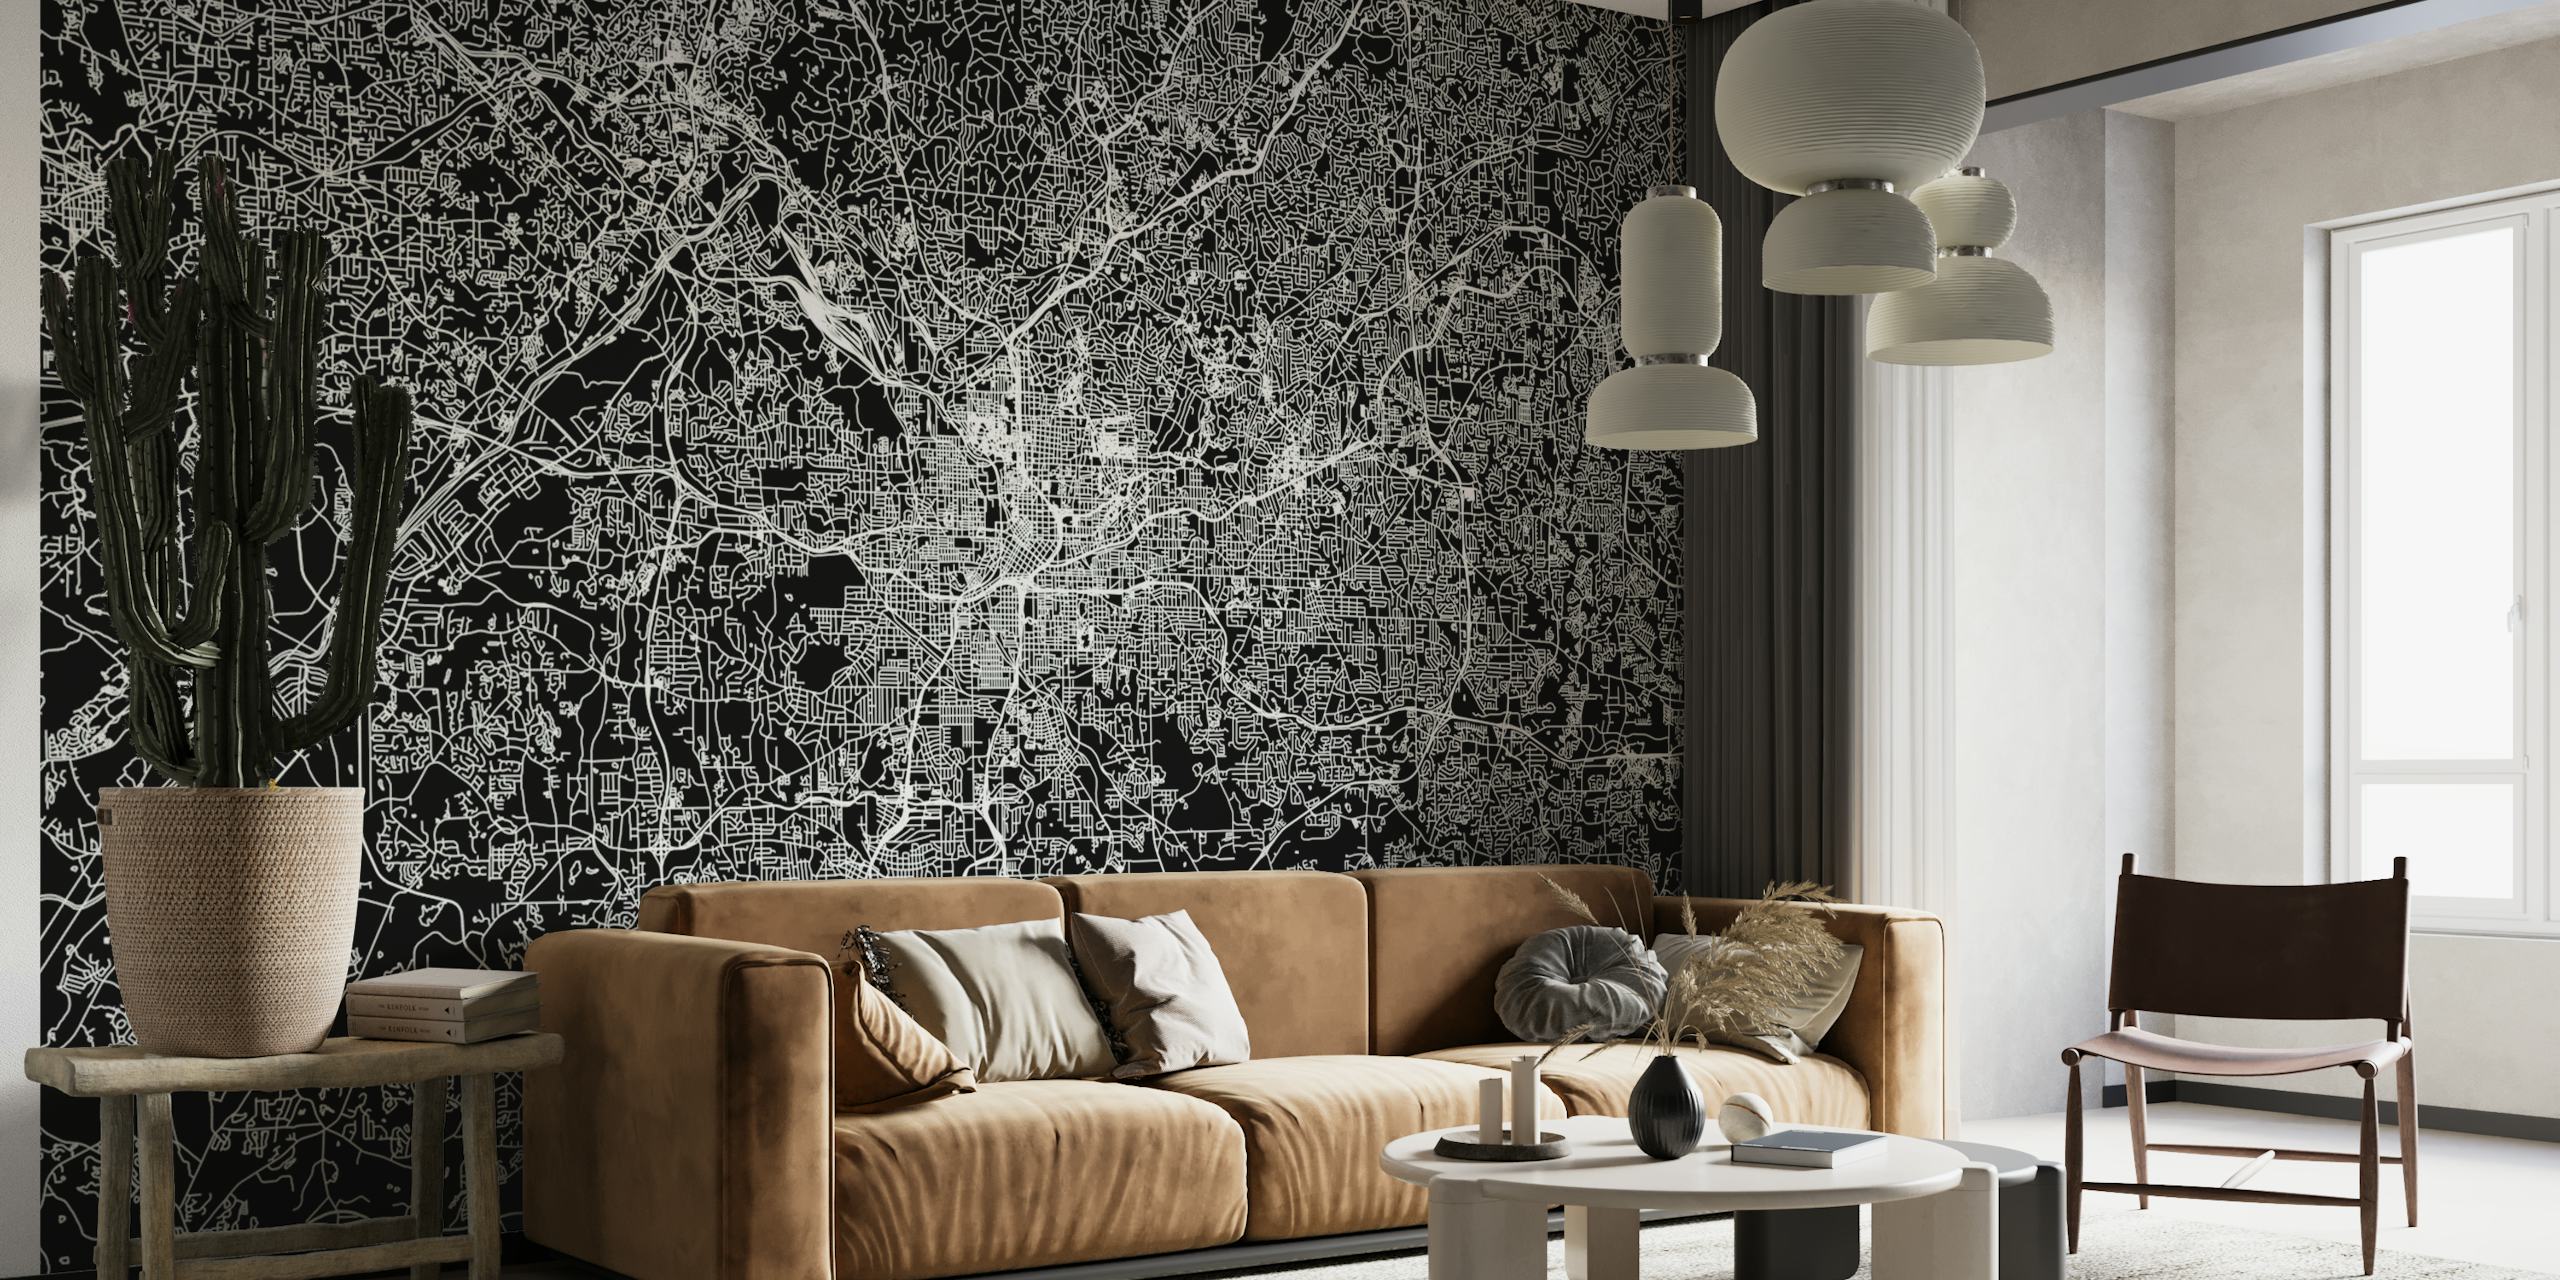 Elegante mural de mapa em preto e branco do layout da cidade de Atlanta para uma decoração interior moderna.